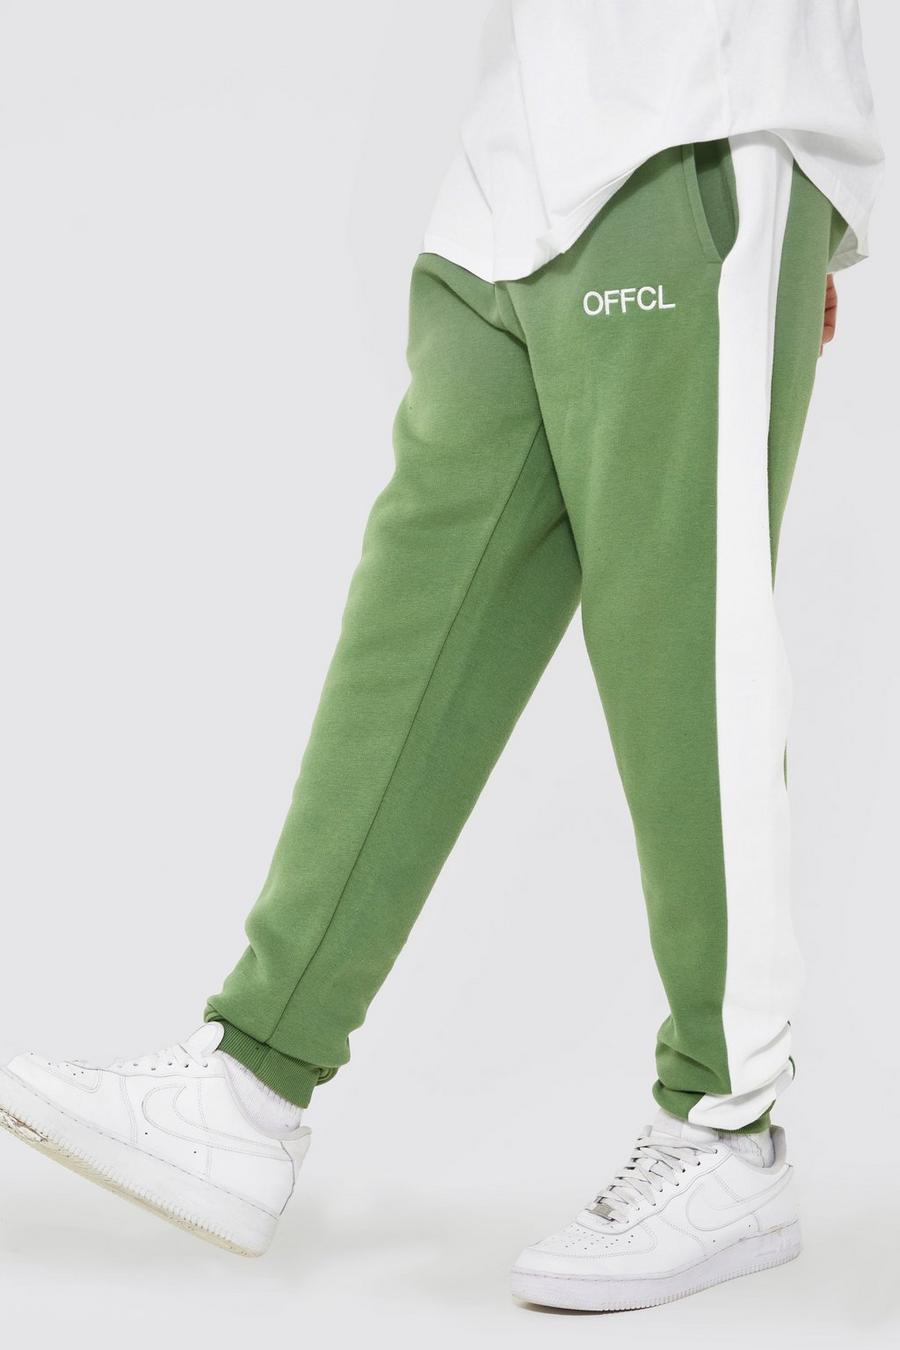 Pantalón deportivo Tall Offcl pitillo con panel lateral, Sage verde